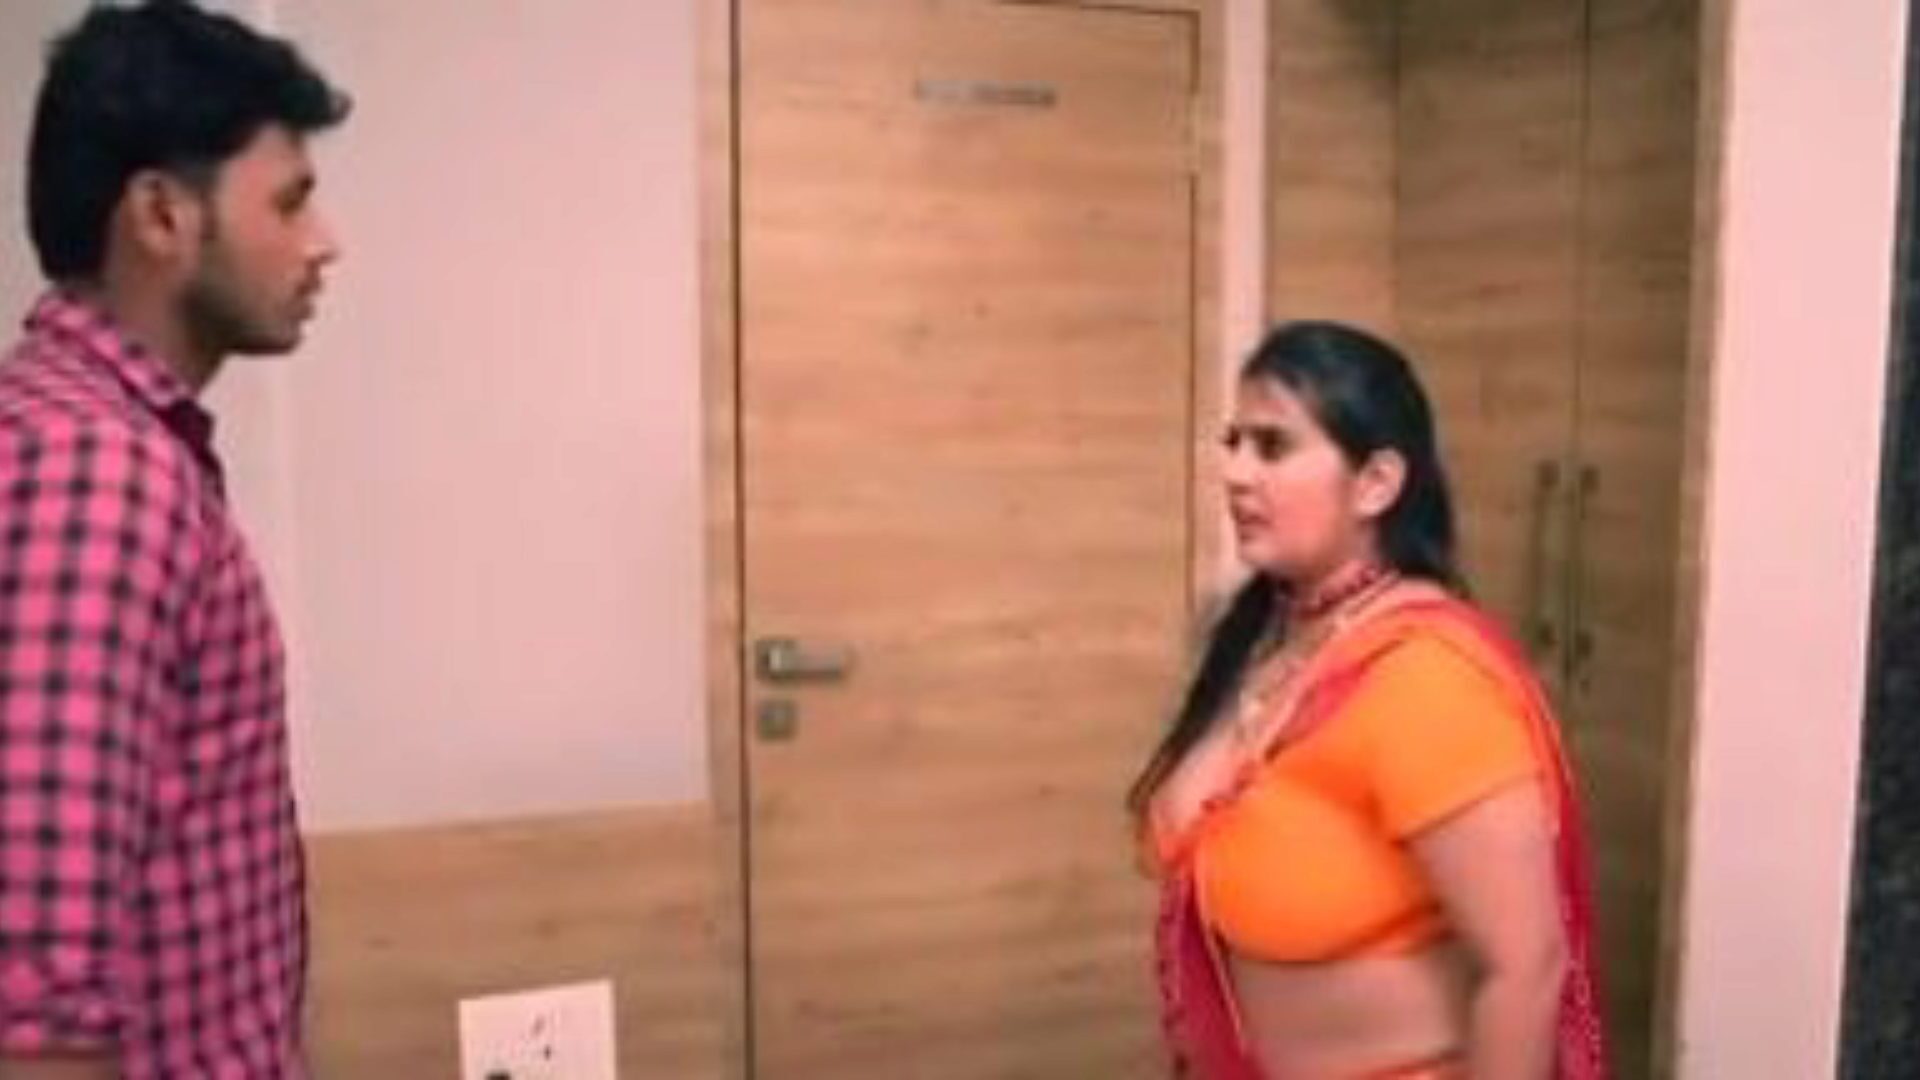 kanchan aunty ep5: free aunty xxx porn video 03 - xhamster regarde kanchan aunty ep5 tube scène de film d'amour gratuitement pour tous sur xhamster, avec la bande supérieure de bangladeshi aunty xxx & aunty vignettes de films porno mobiles